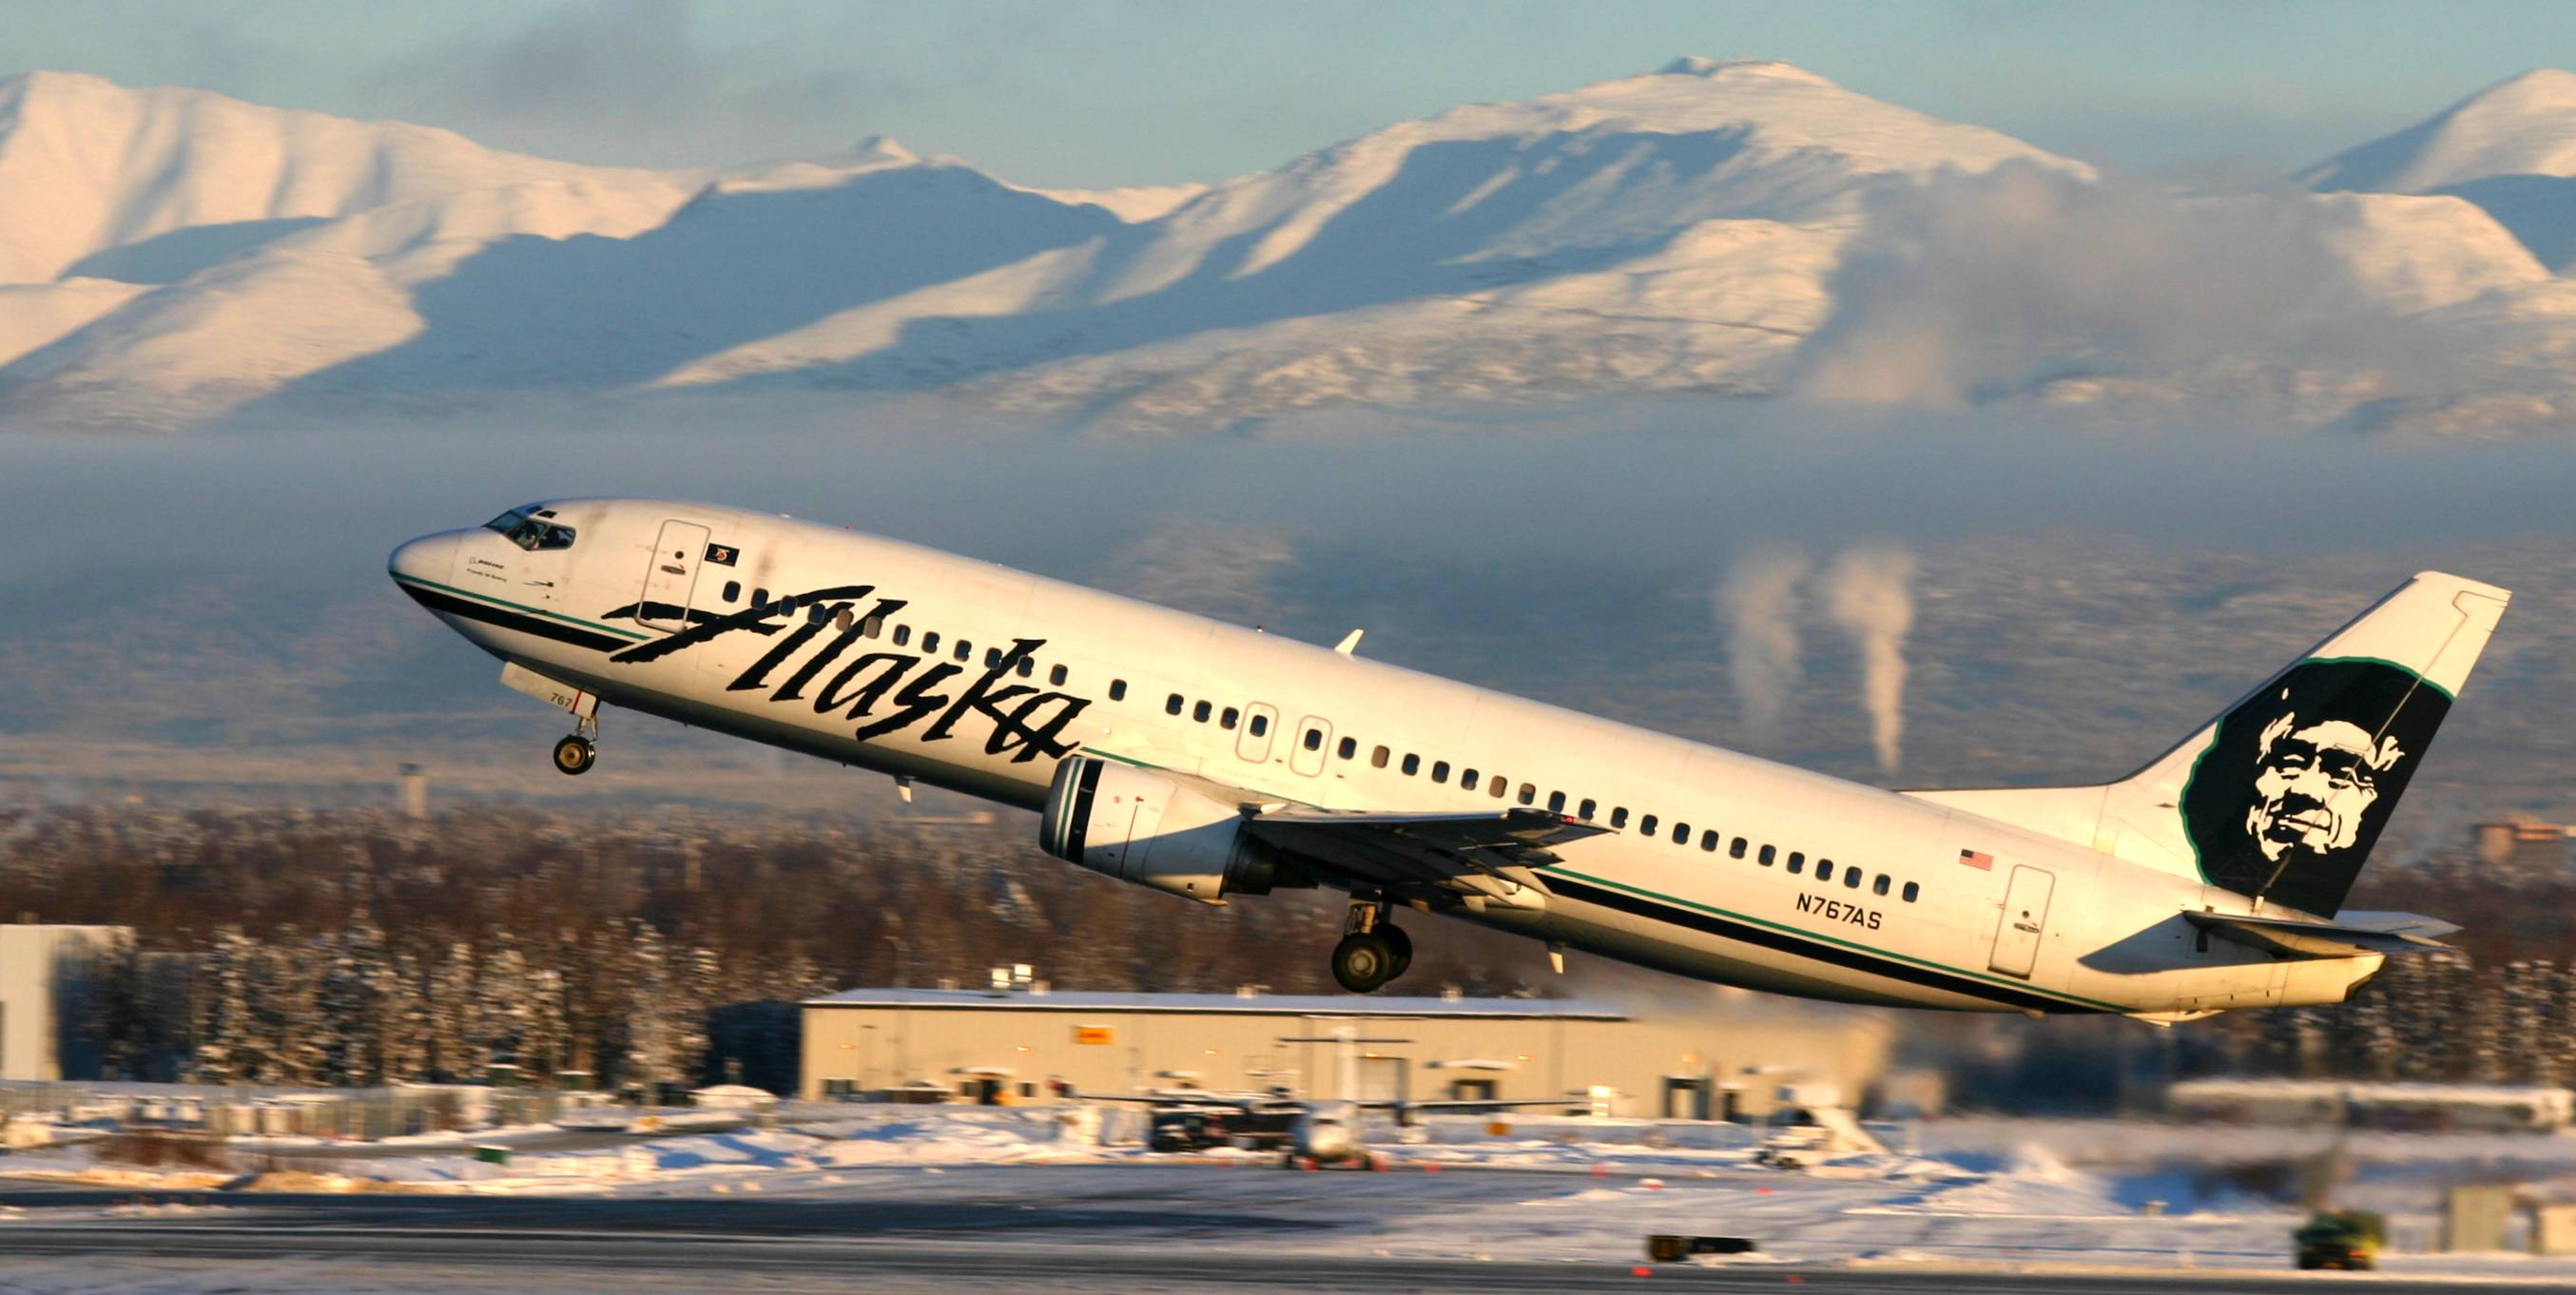 40% Bonus Miles on Alaska Airlines